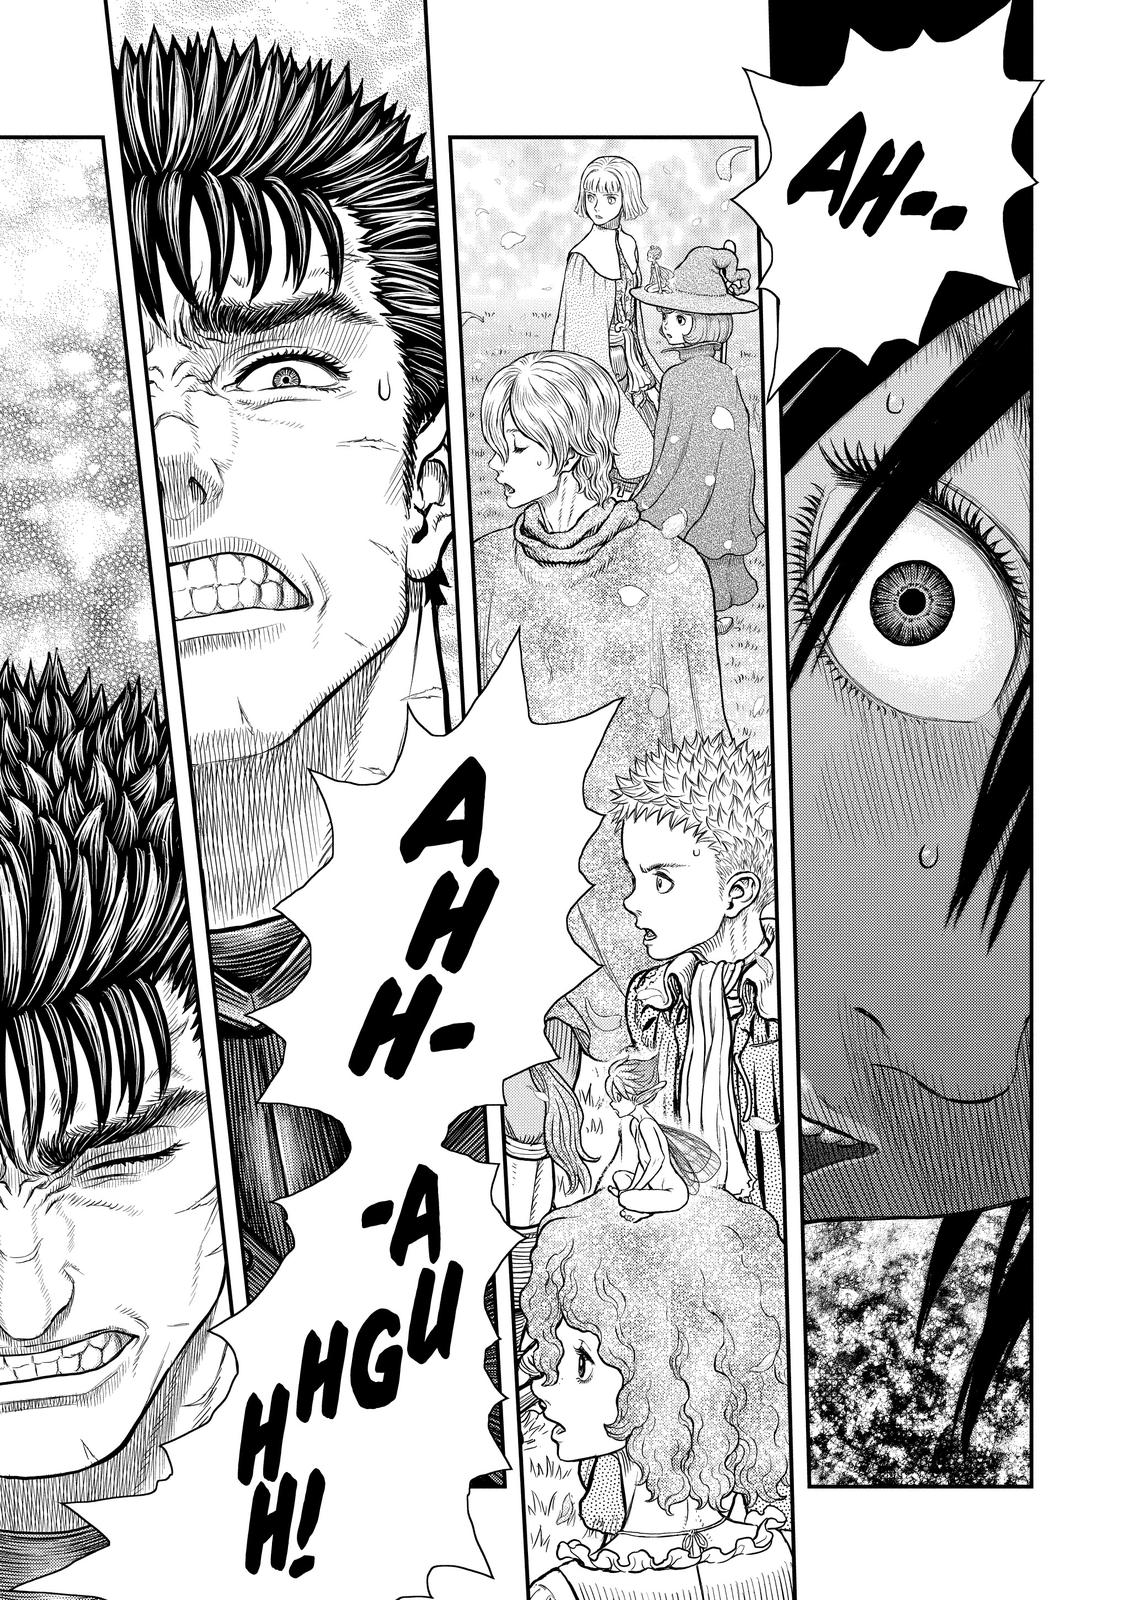 Berserk Manga Chapter 359 image 21